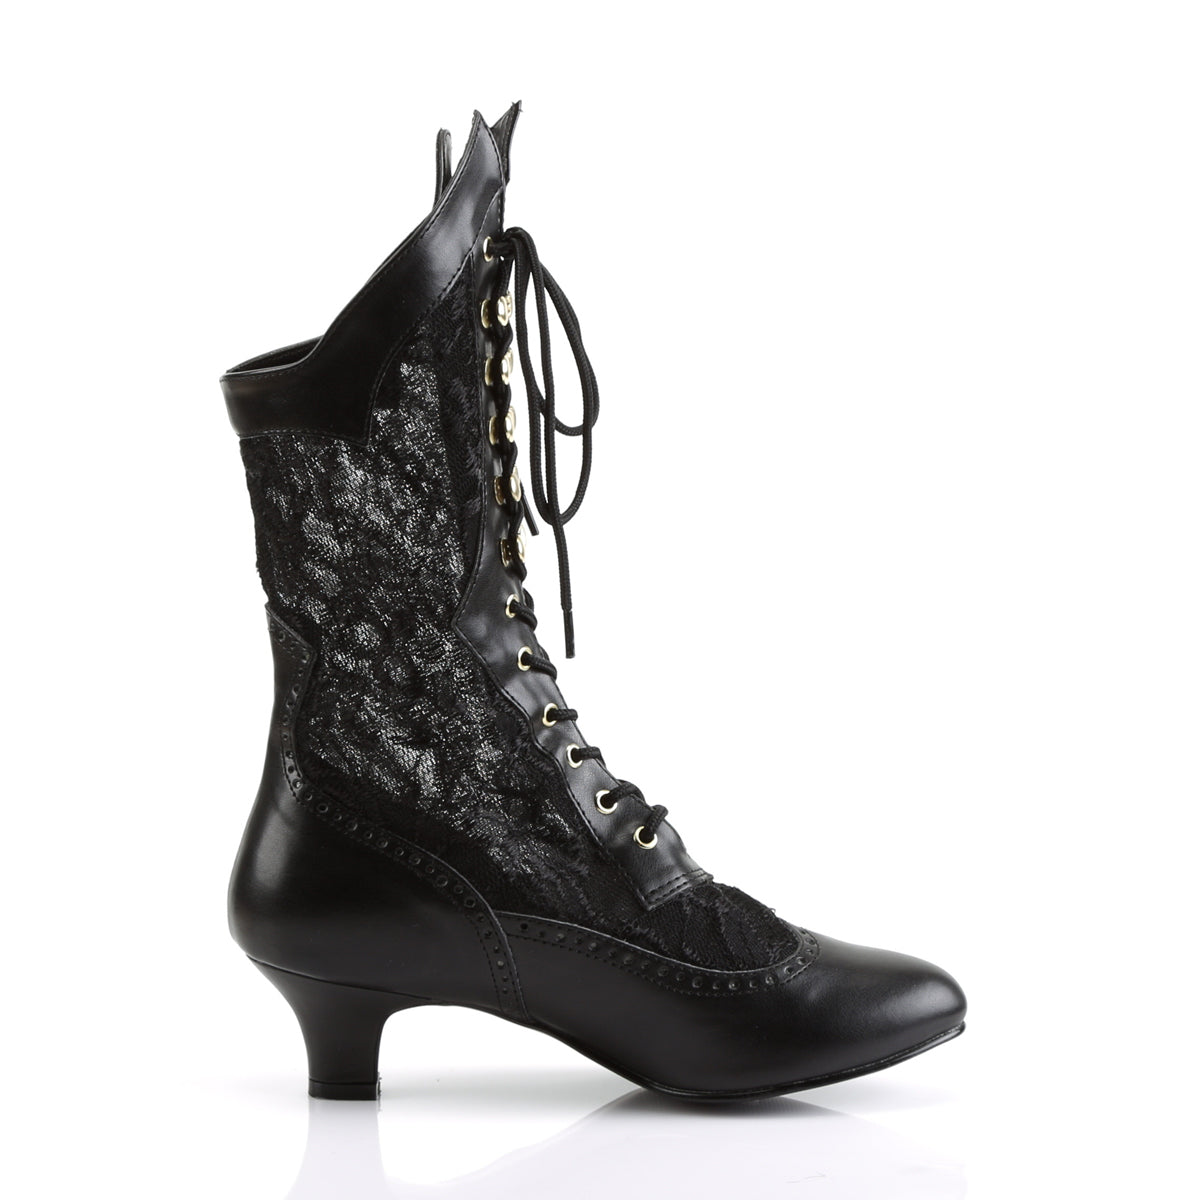 DAME-115 Funtasma Fantasy Black Pu-Lace Women's Boots [Fancy Dress Footwear]